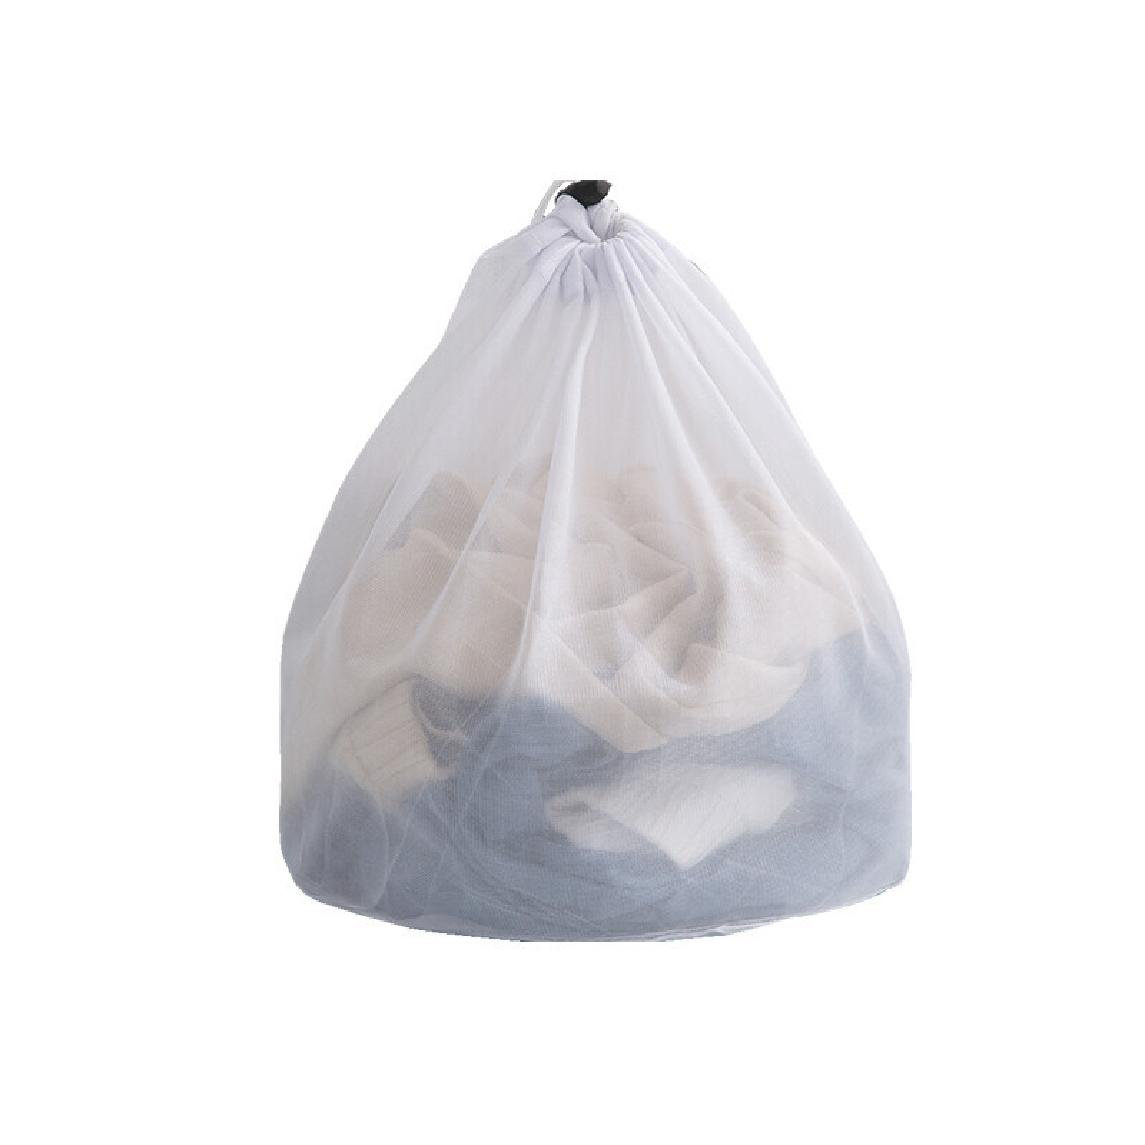 Bra Laundry Bag Anti Deformation Underwear Clothes Washing Bag